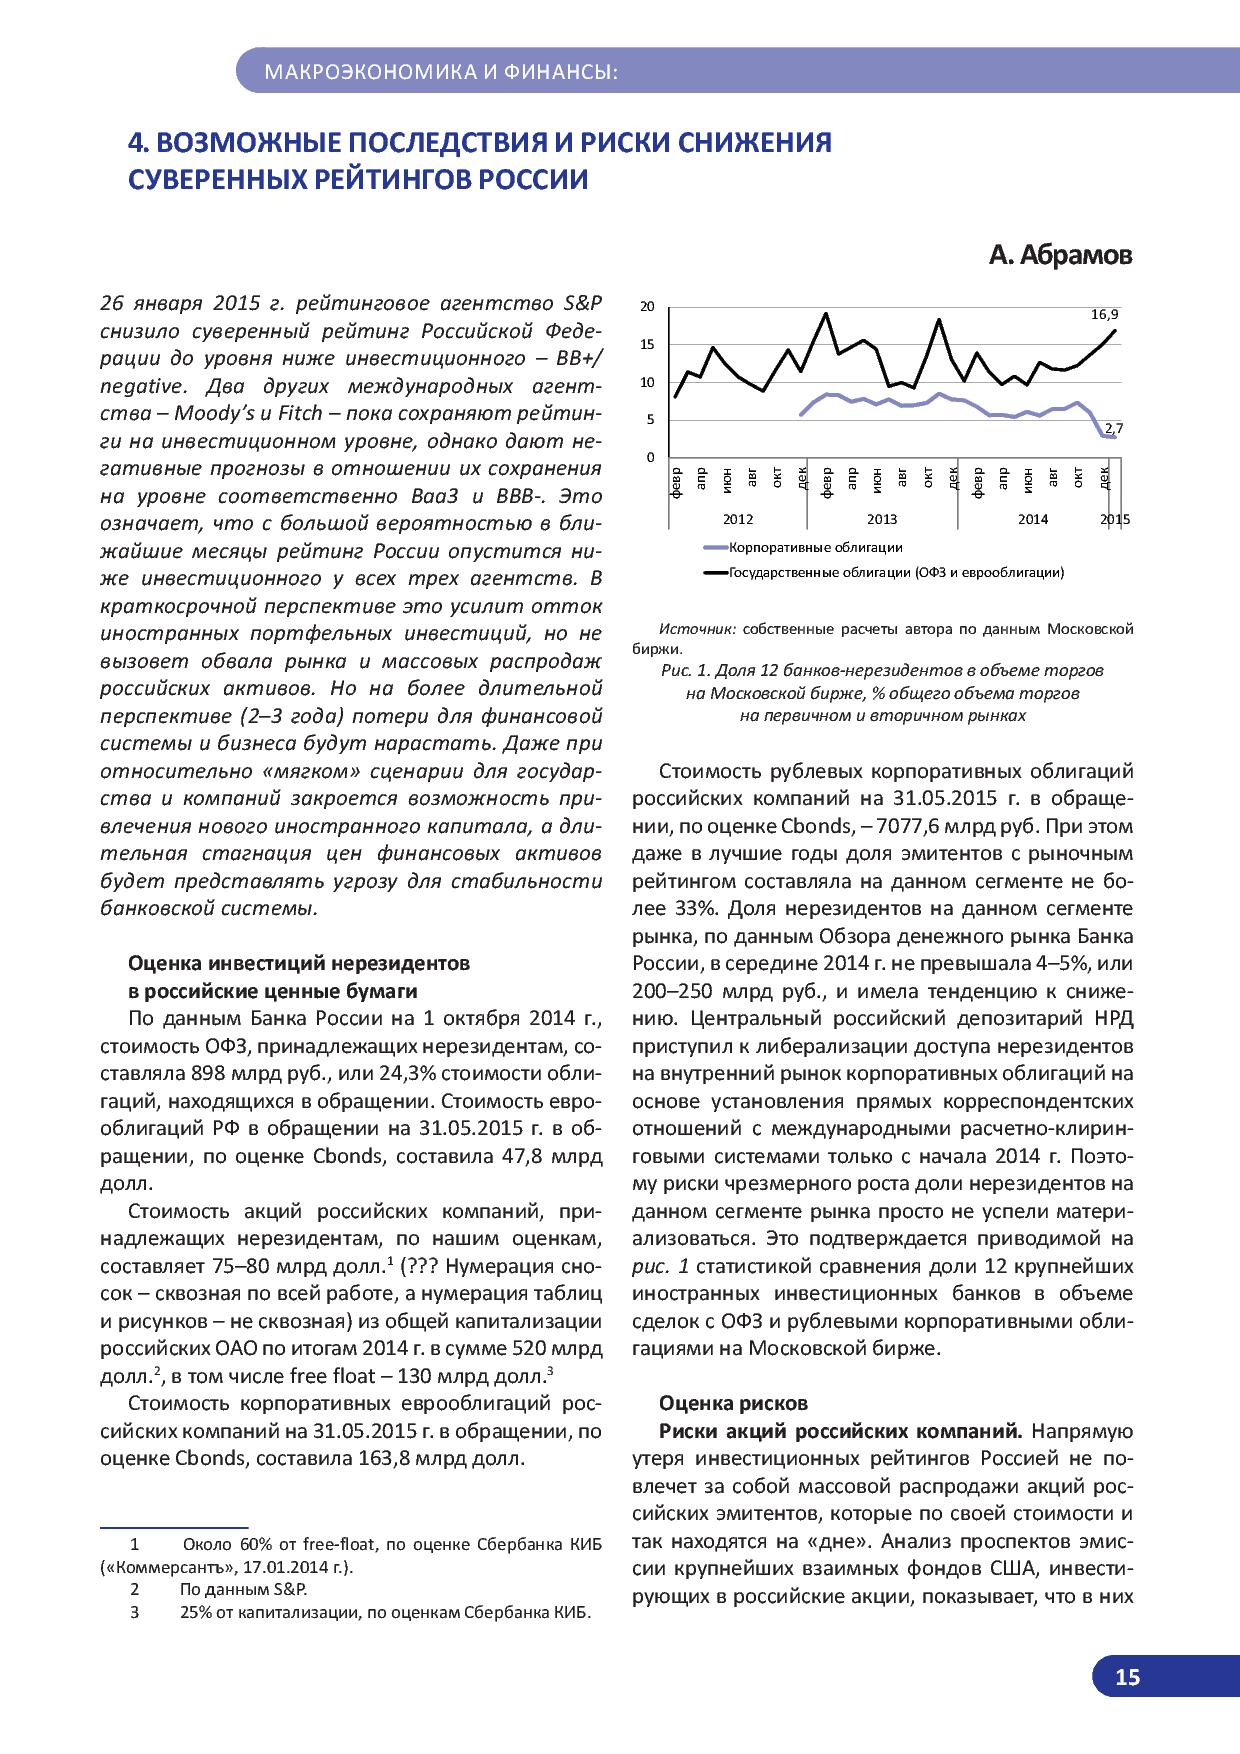   Оперативный мониторинг экономической ситуации в России. Тенденции и вызовы социально-экономического развития  - фото 16